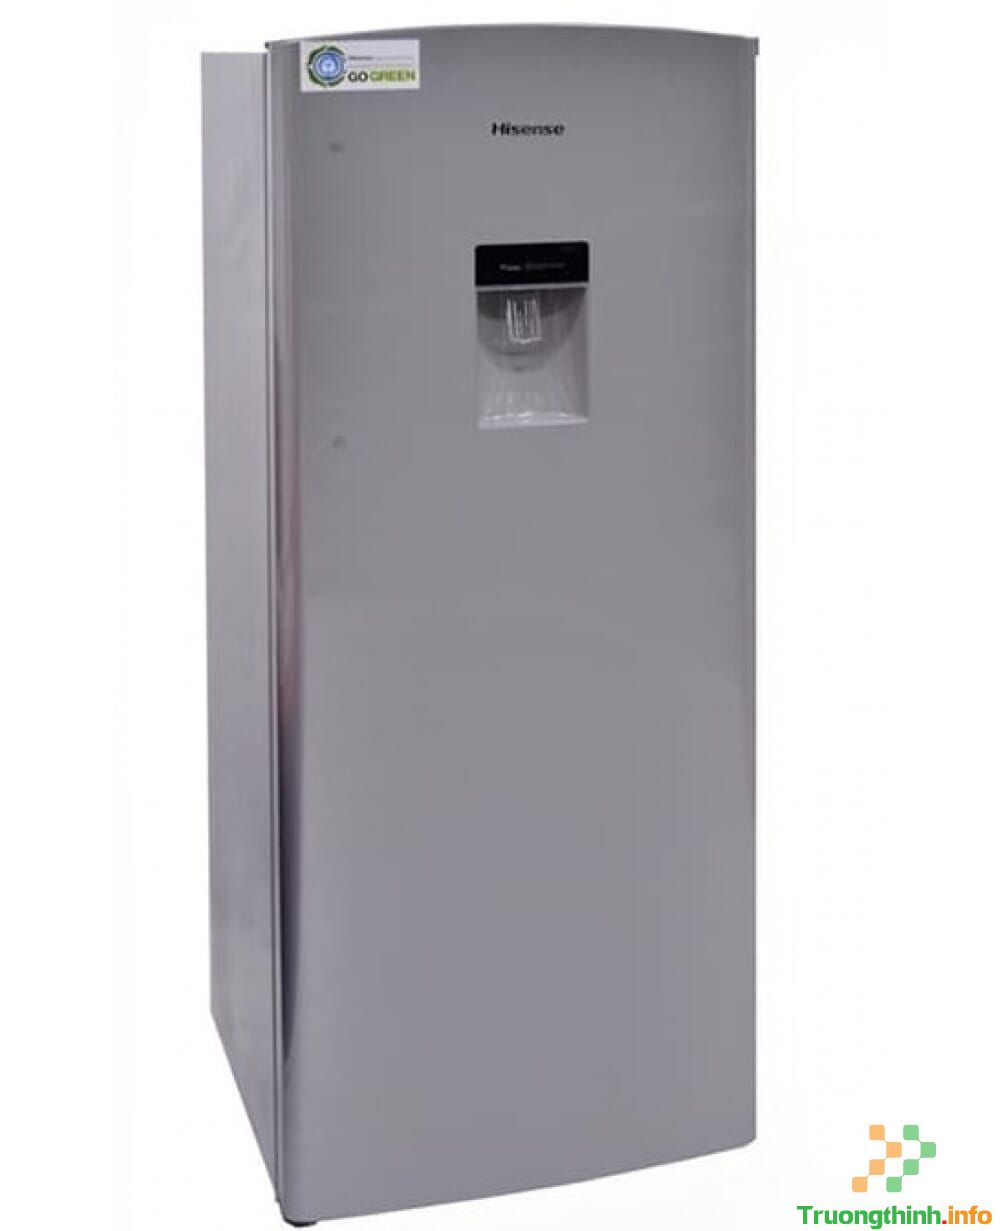 Sửa Tủ Lạnh Mất Điện Không Chạy Tại Quận 12